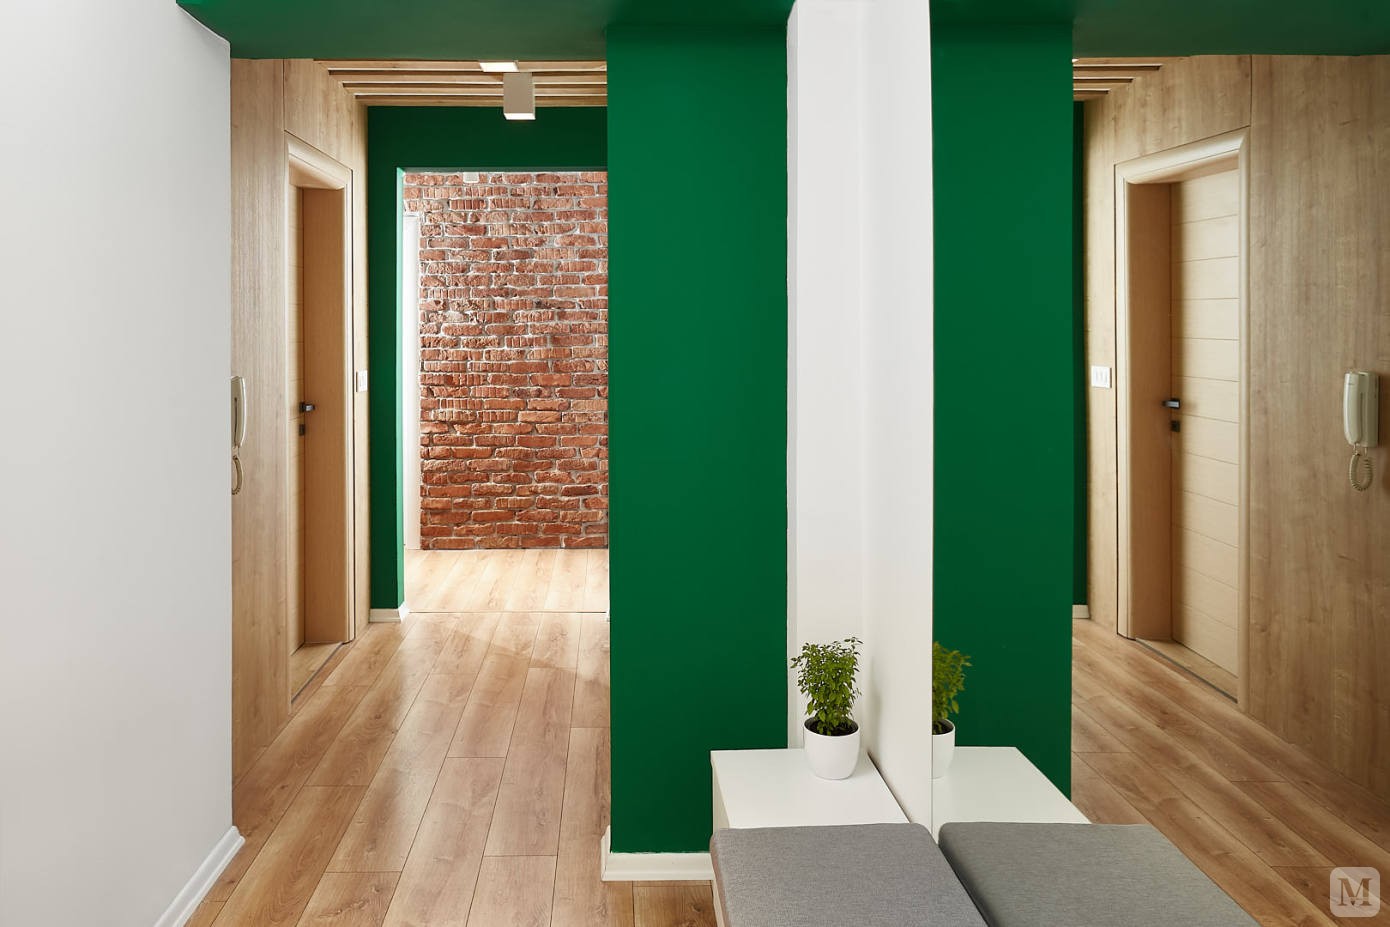 小小的绿植点缀着整个空间，葱郁而不失温馨；
棕黄色的木纹地板加上白色的墙面，明亮清晰而不显的单调；
清爽简约型的现代家具搭配着红砖背景墙，雅致简洁，让整个空间充满了大自然的生机。